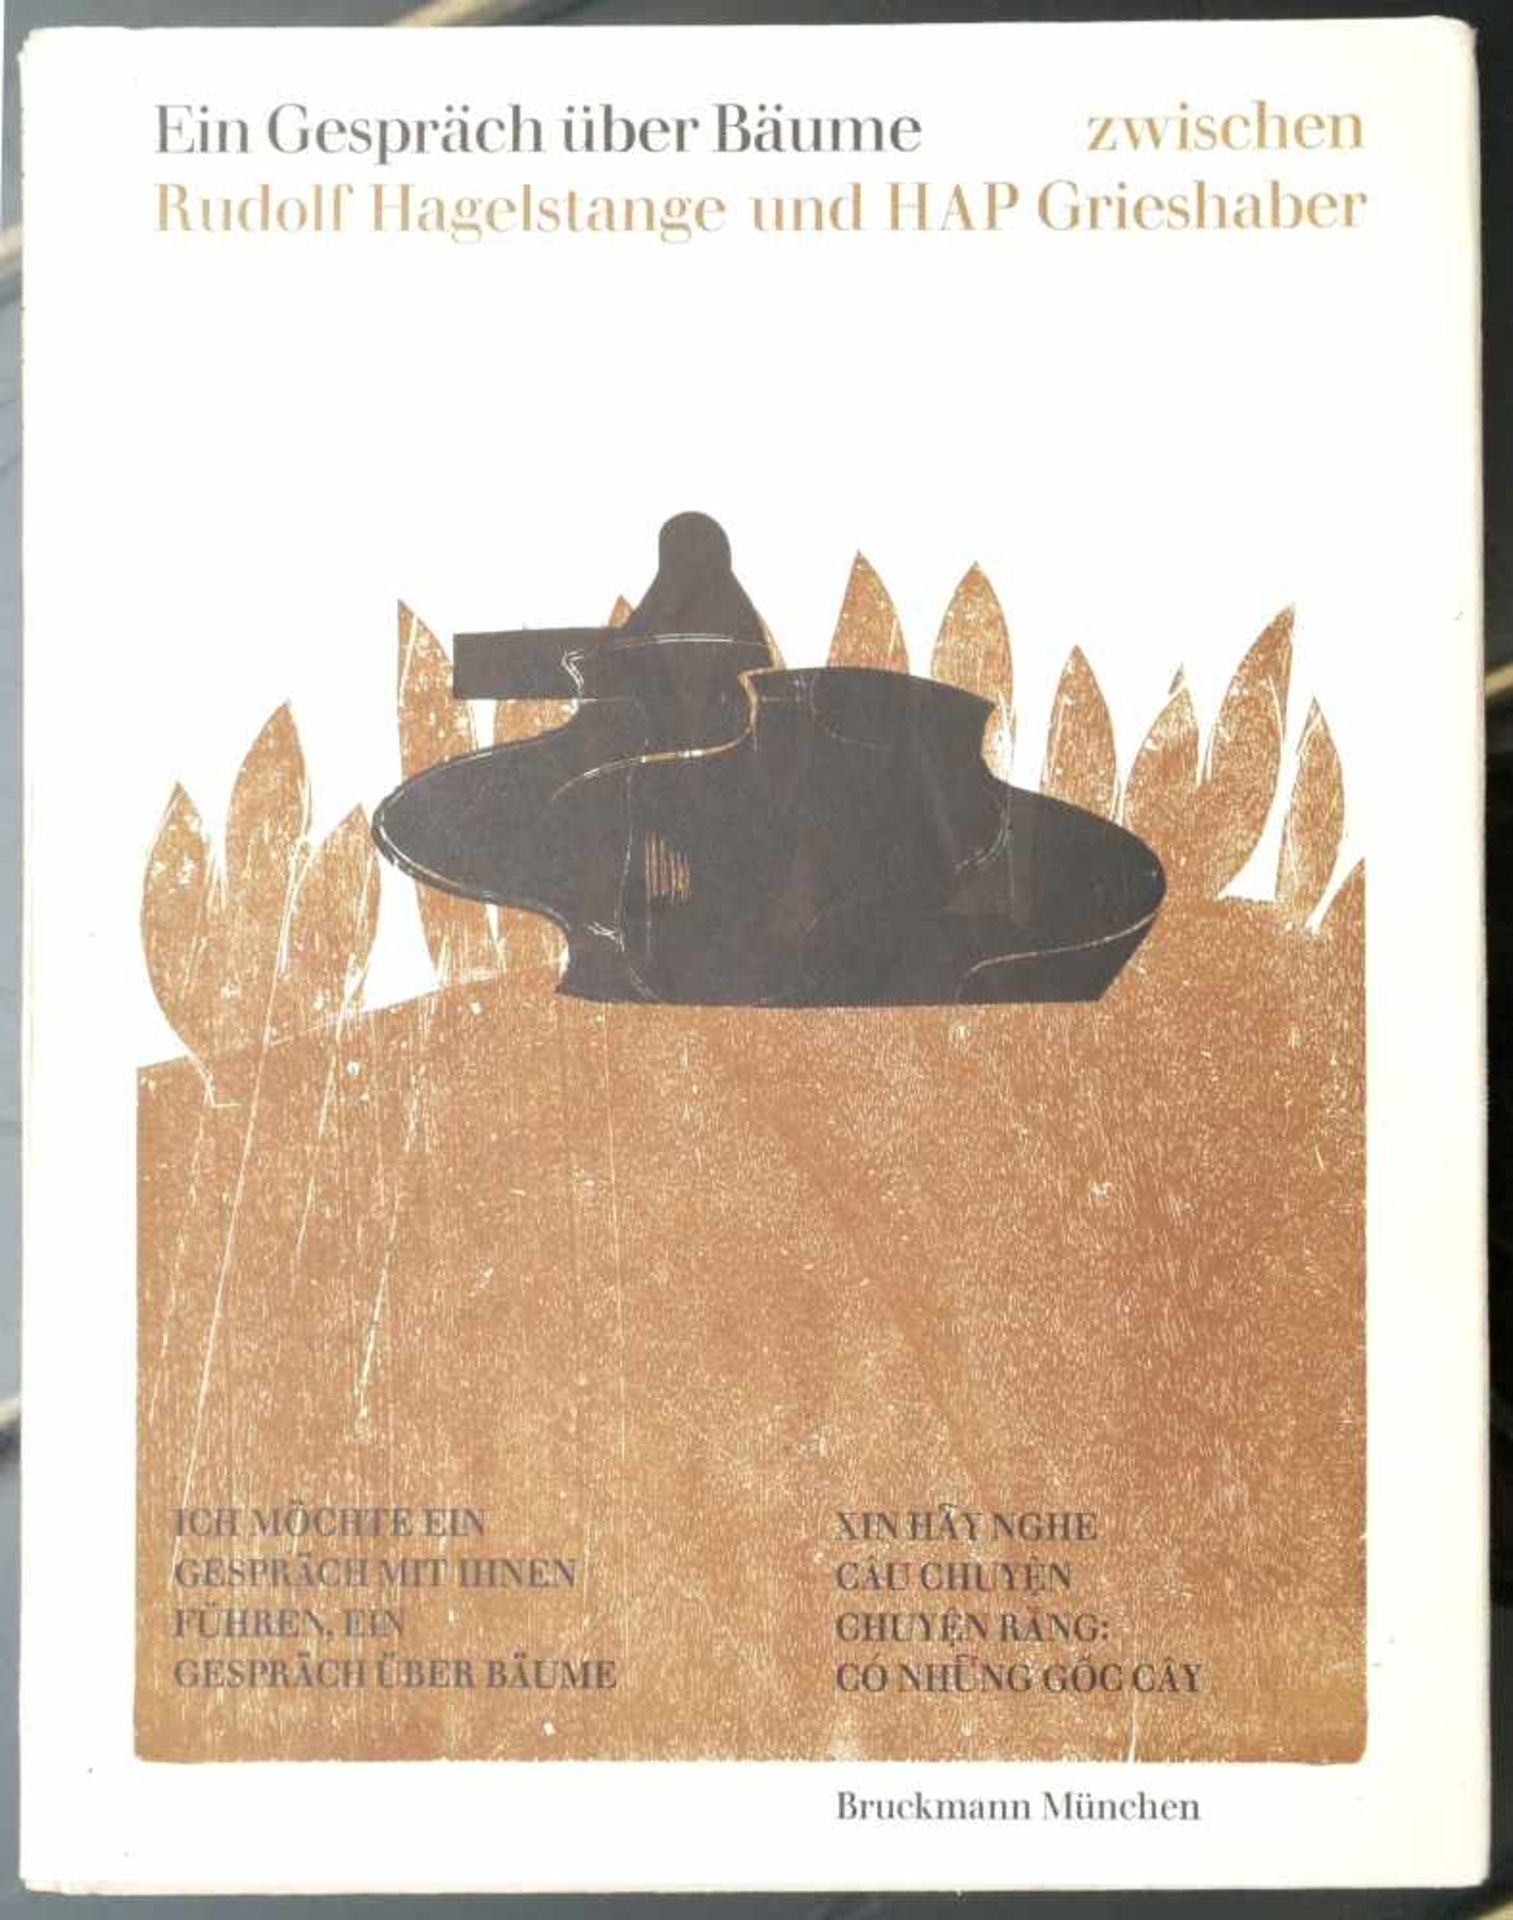 Hagelstange, Rudolf und Grieshaber, HAP: Ein Gespräch über Bäume 1971Limitierte Auflage von 500